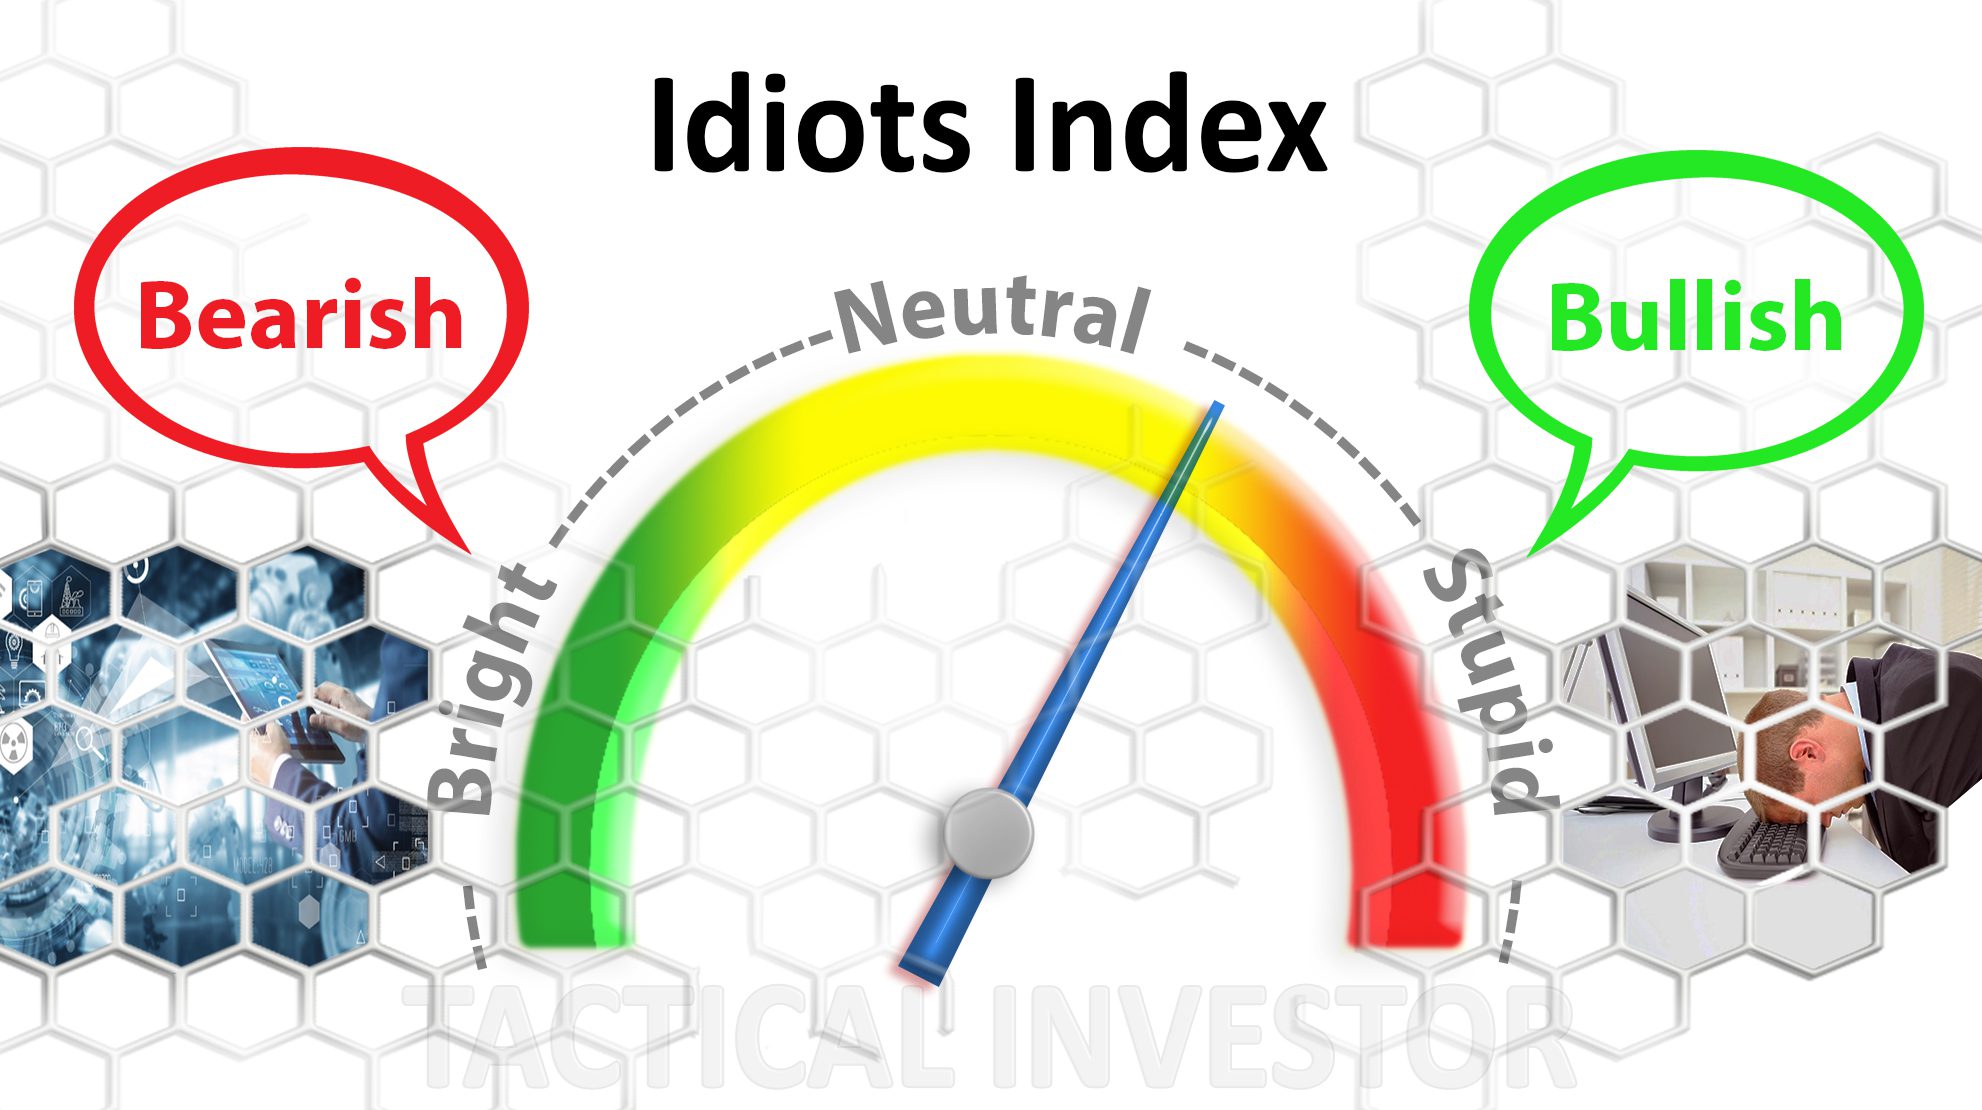 Idiots index